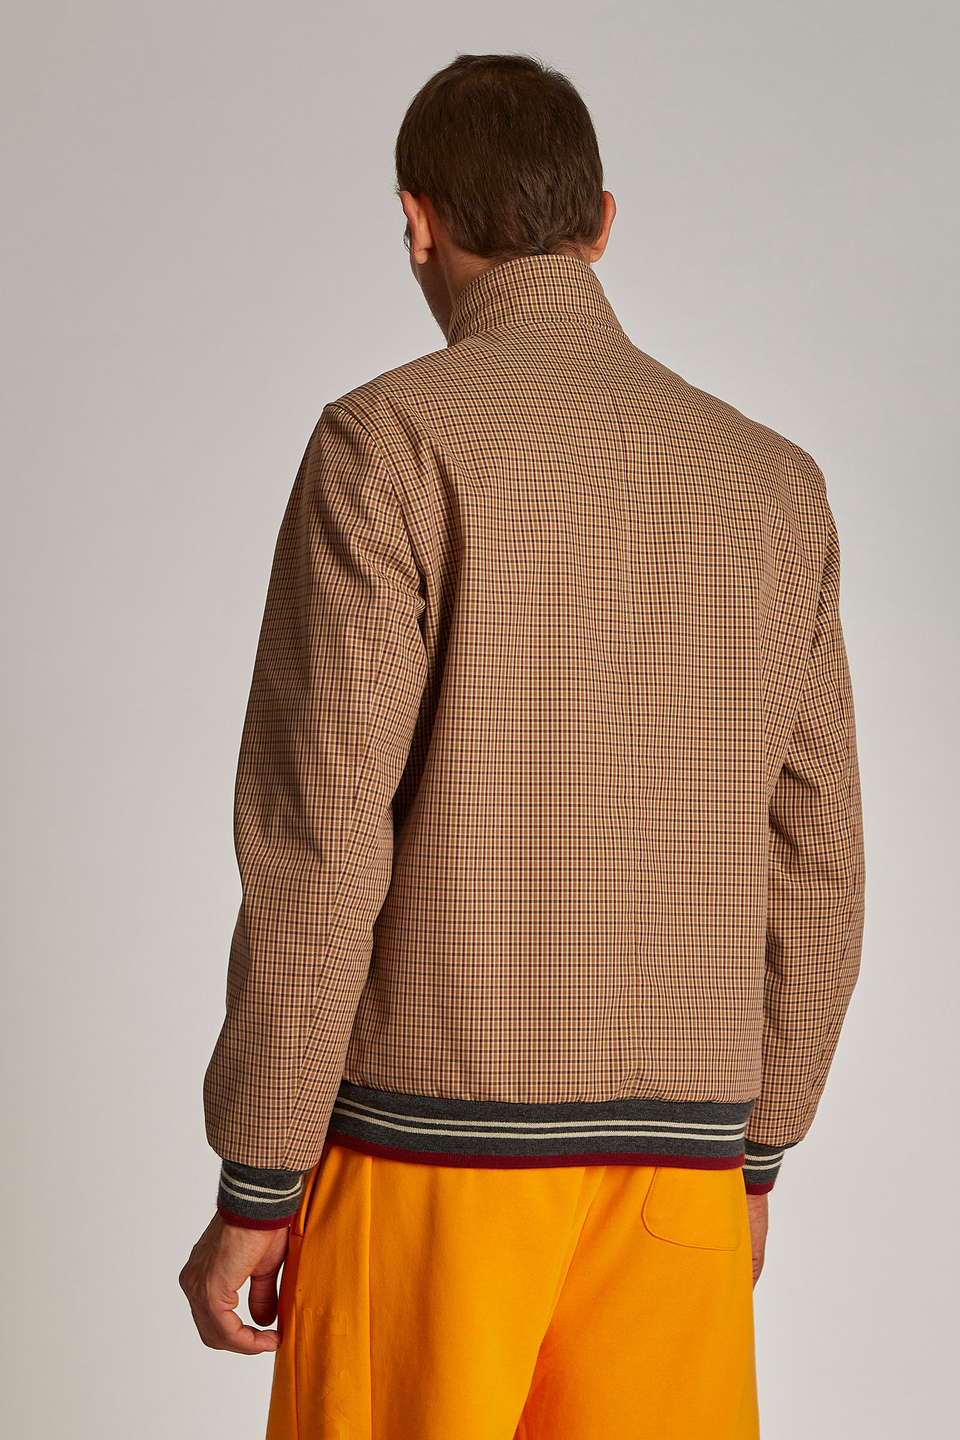 Veste homme en coton, coupe classique et fermeture zippée sur le devant - La Martina - Official Online Shop